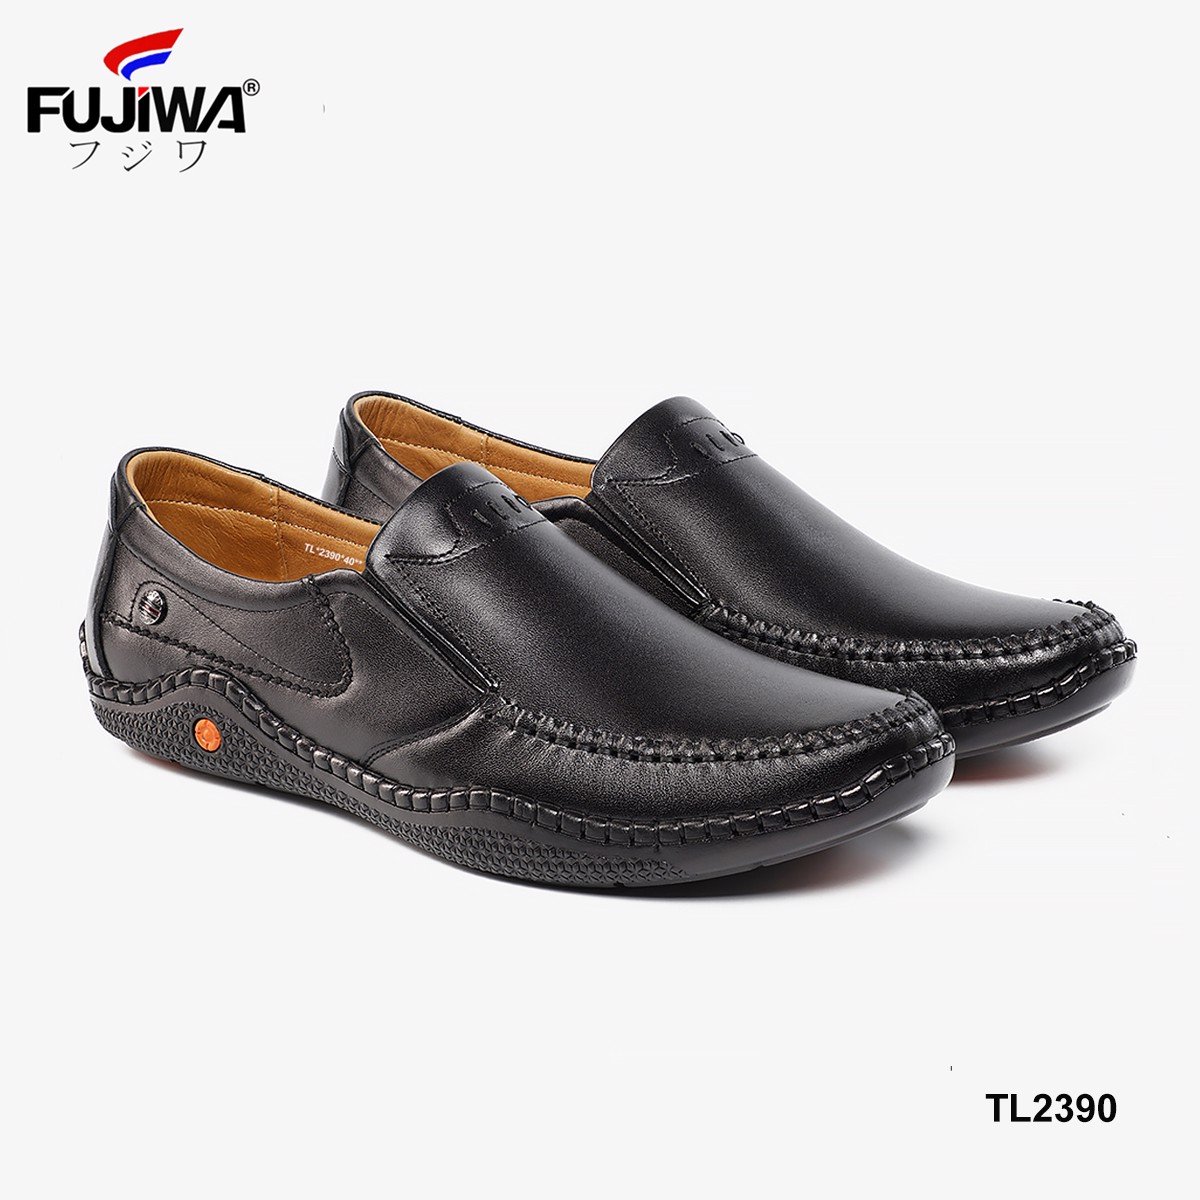 Giày Lười Da Nam Da Bò Fujiwa - TL2390. 100% Da bò thật Cao Cấp loại đặc biệt. Giày được đóng thủ công (handmade)